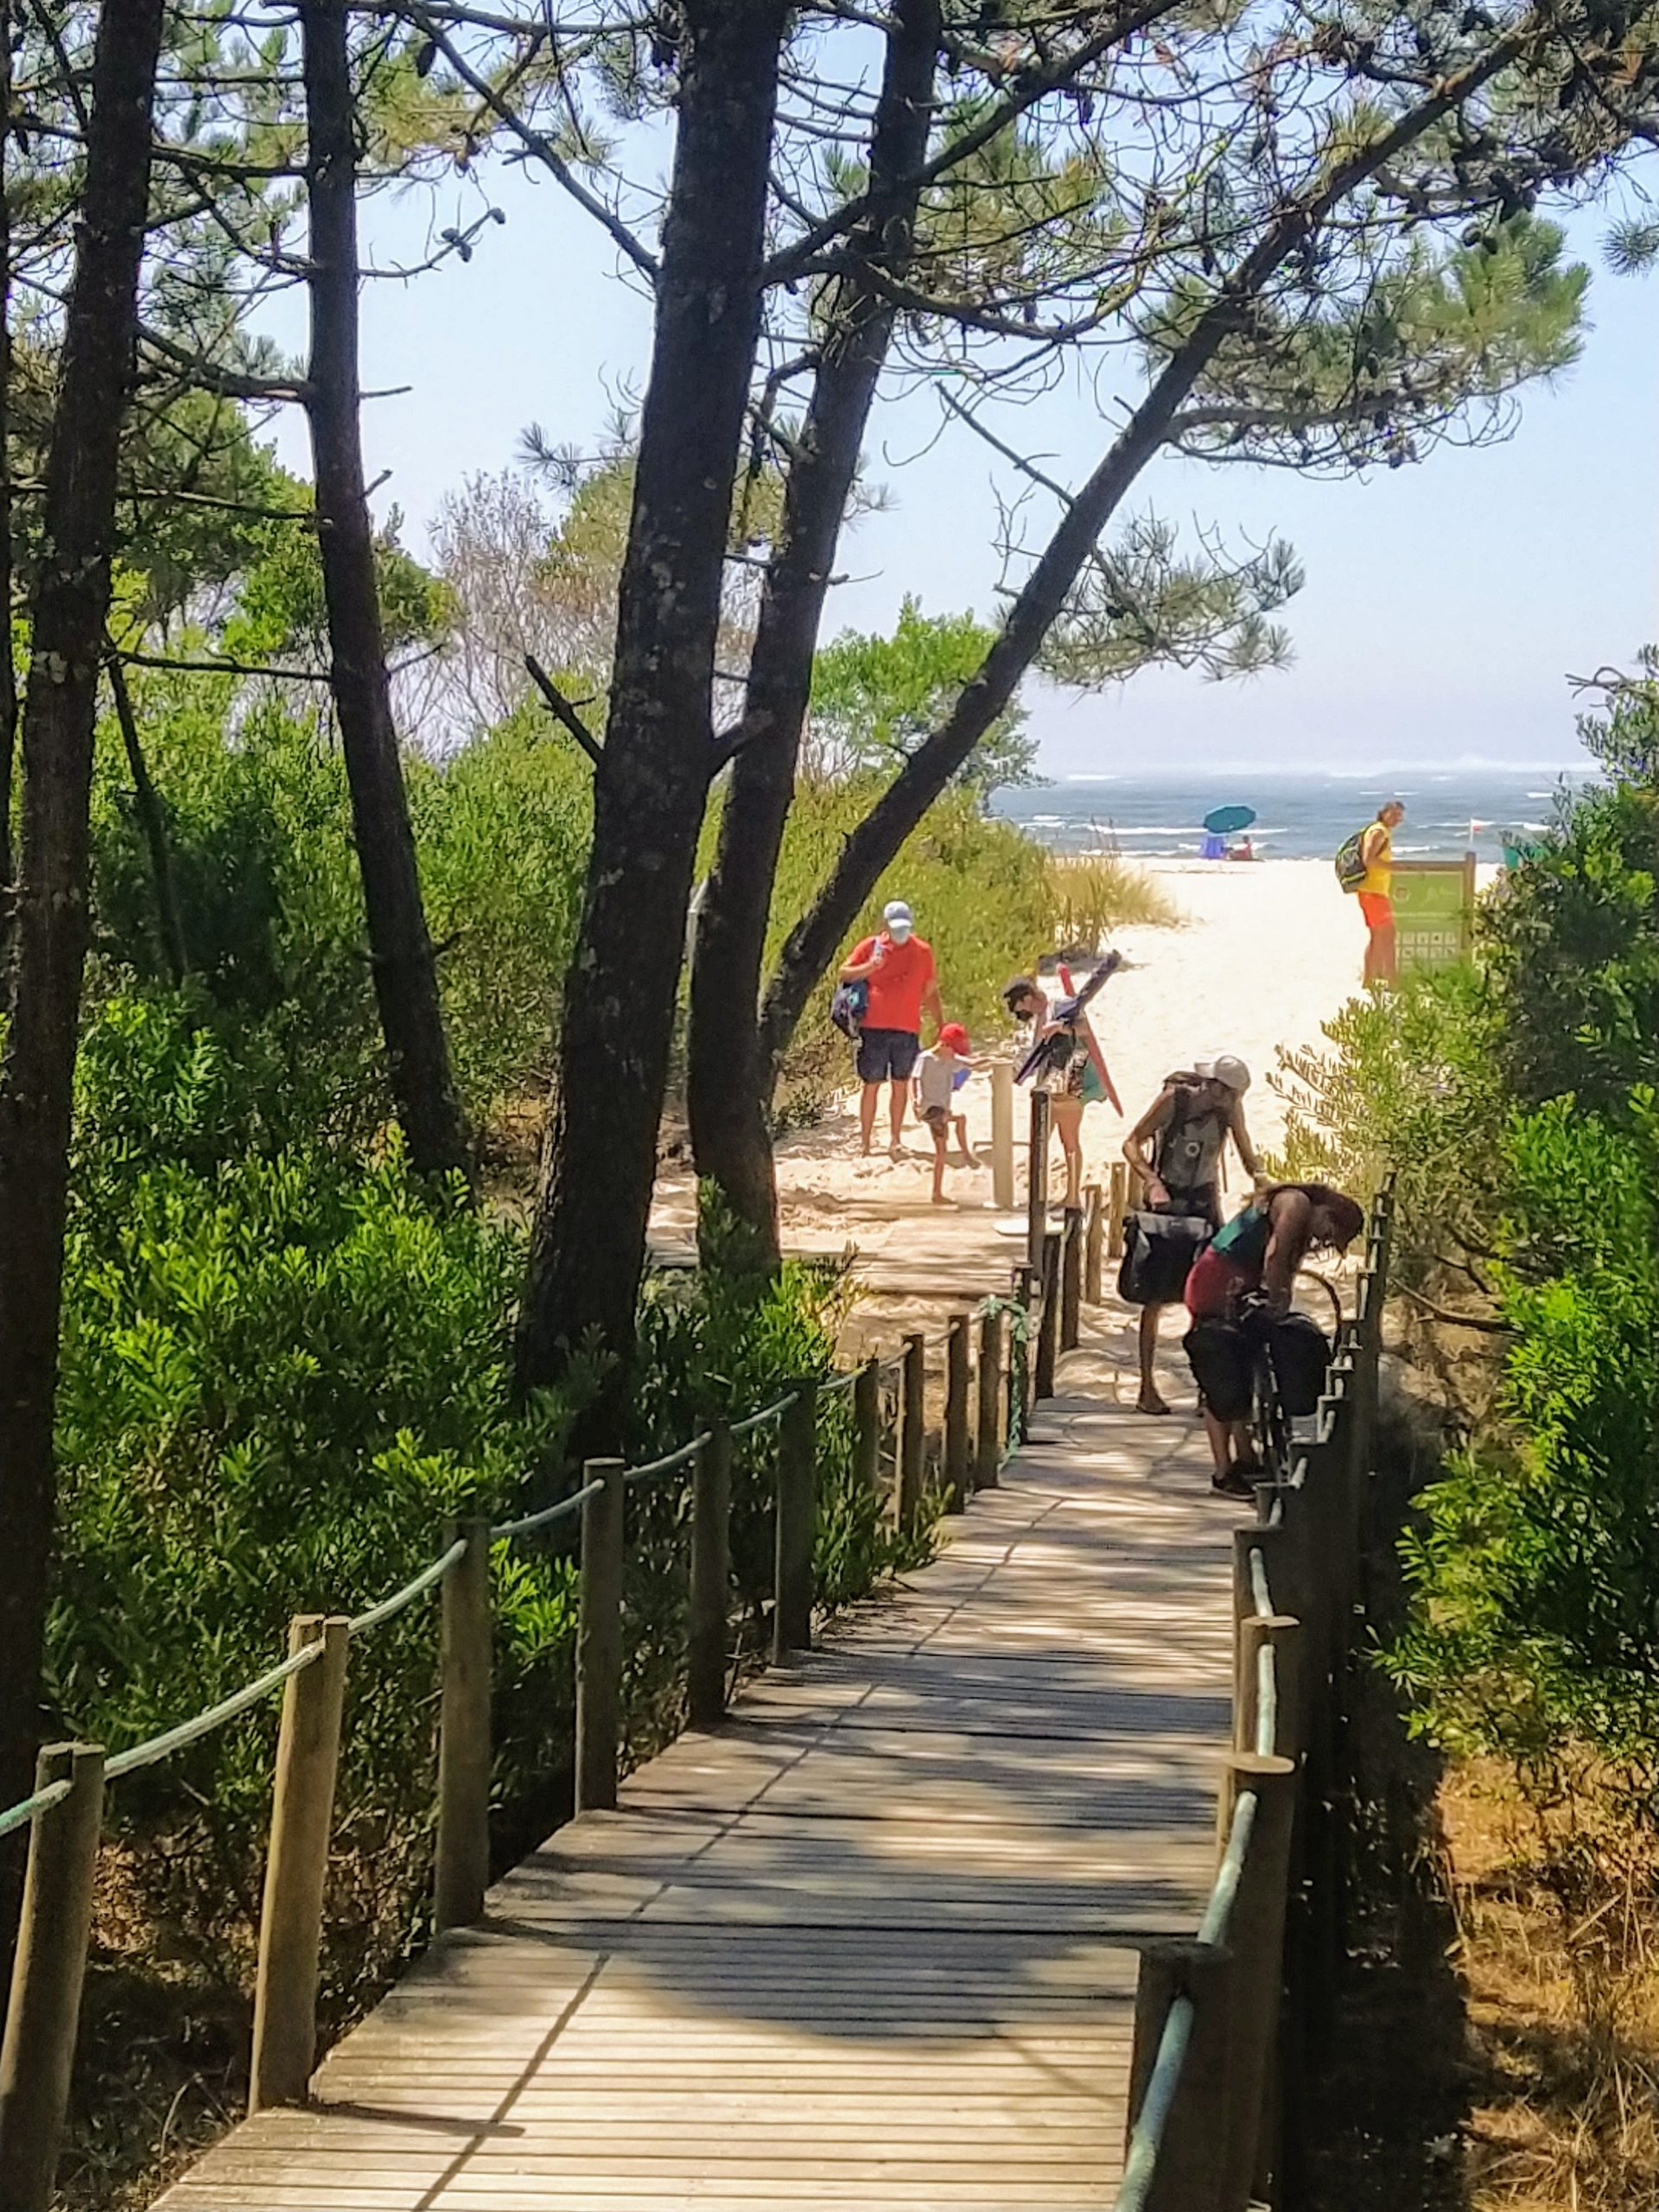 Pasarela pasando por dunas y pinos camino de la playa portuguesa